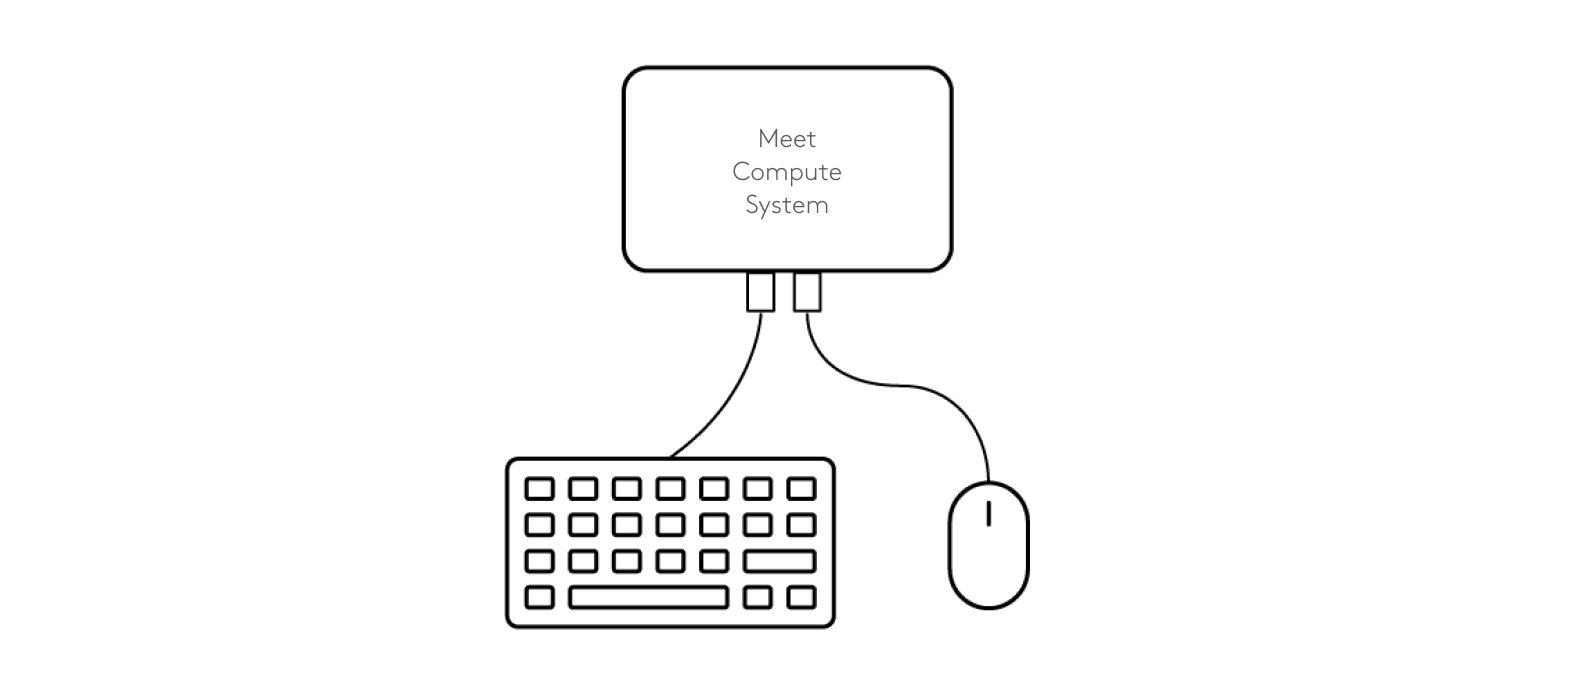 Schemat podłączenia klawiatury i myszy do systemu Meet Compute